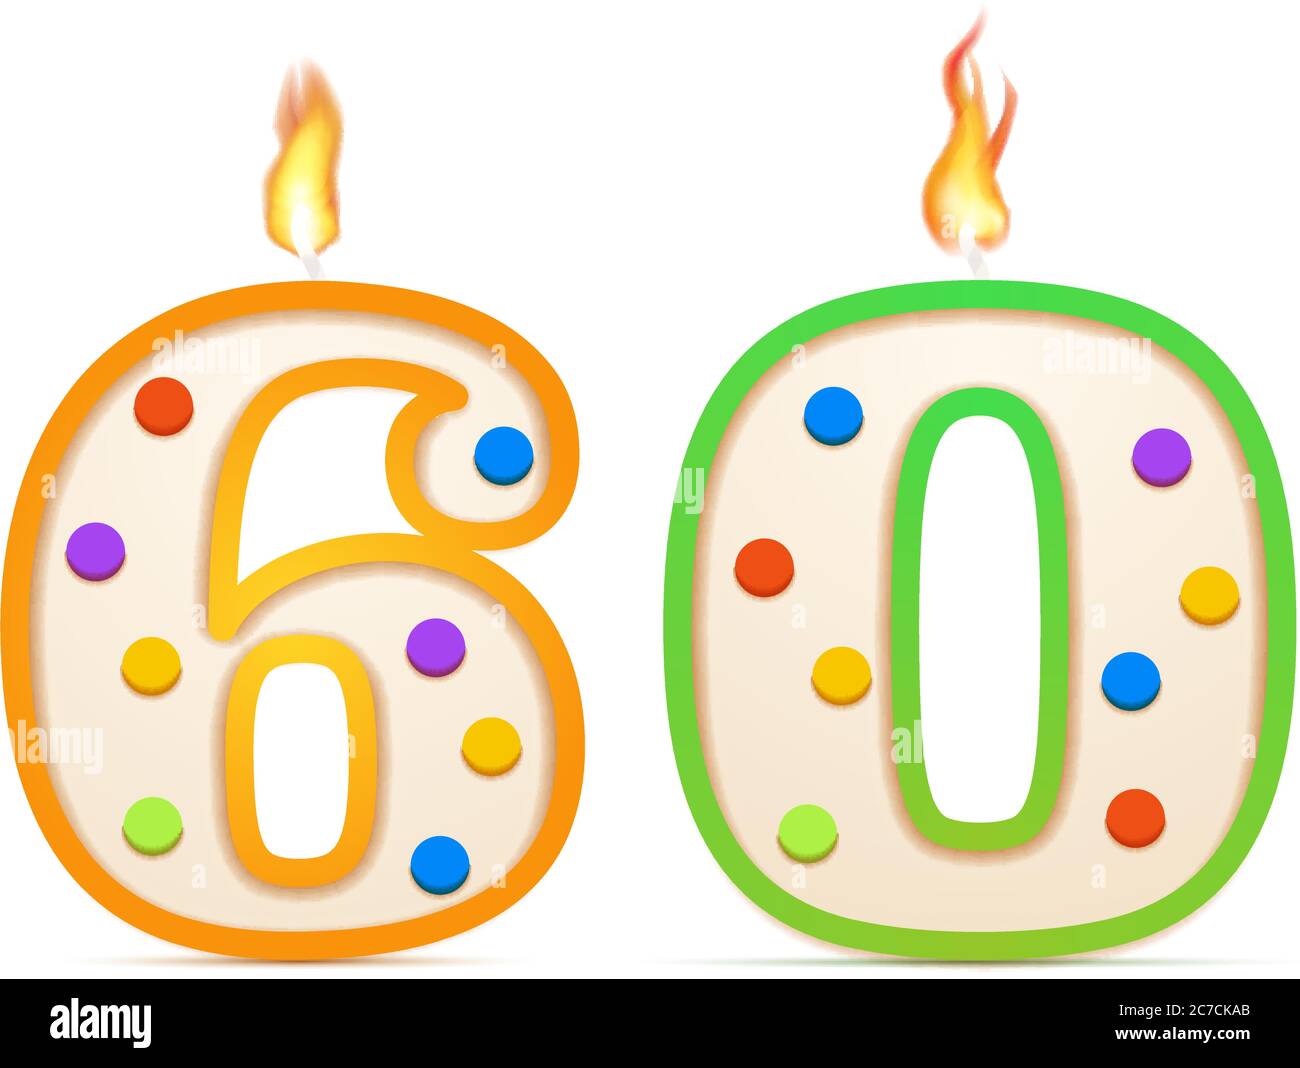 Aniversário de sessenta anos, número 60 em forma de vela de aniversário com  fogo branco